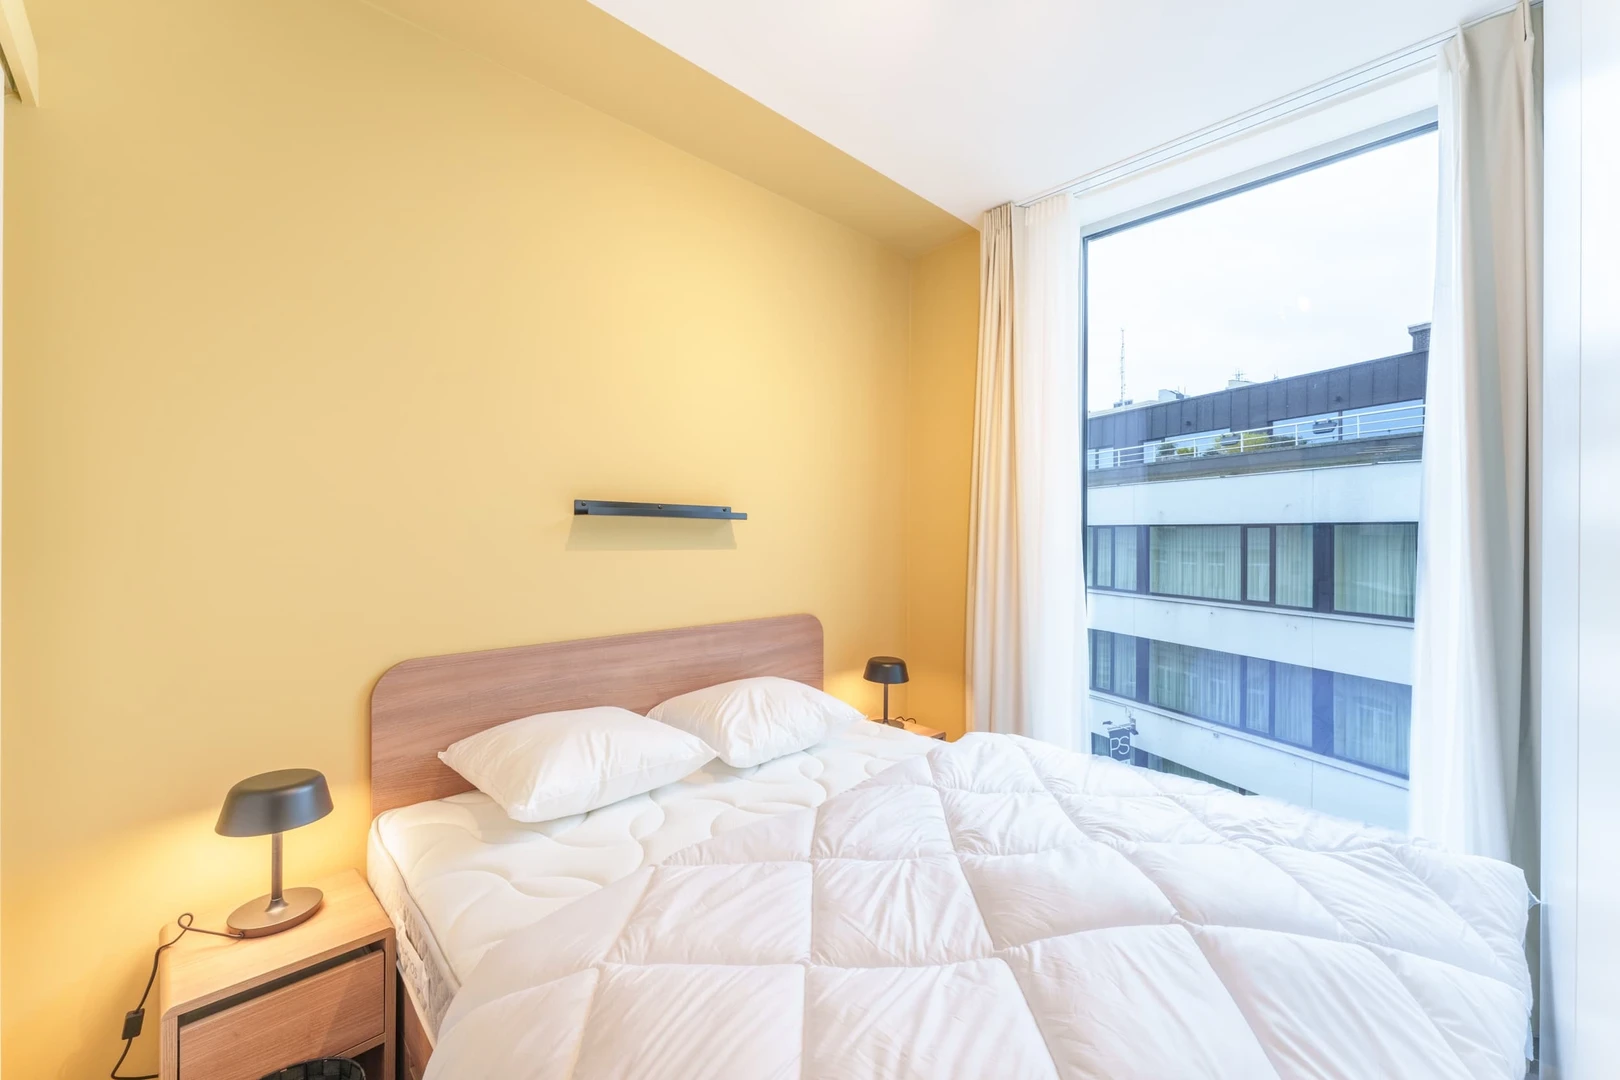 Chambre à louer avec lit double Anvers